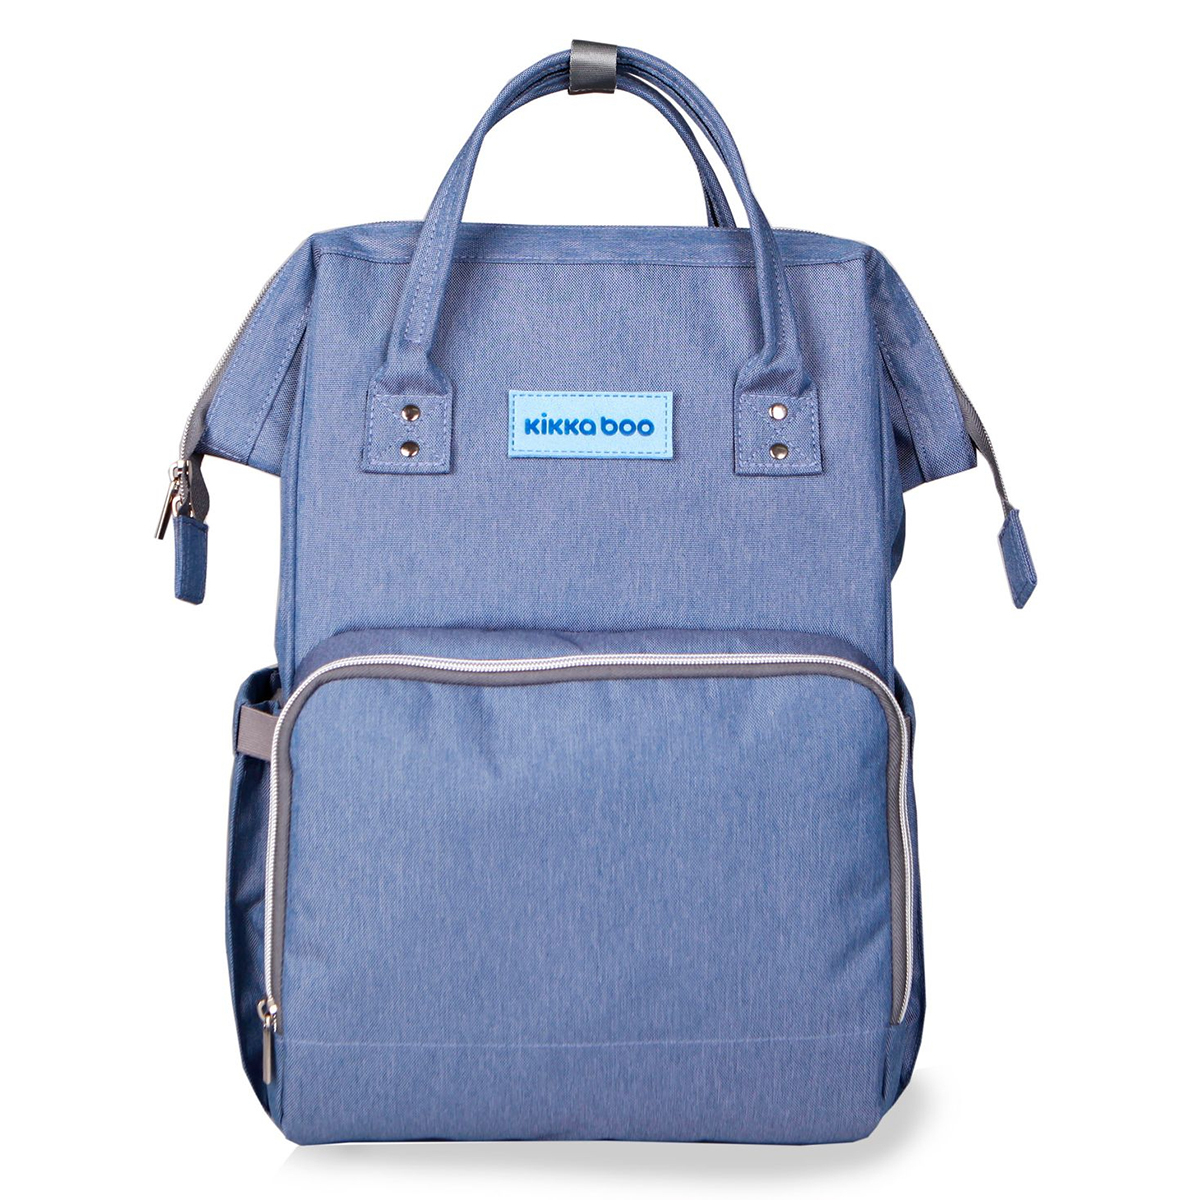 Τσάντα Αλλαξιέρα Backpack (21x27x42) Kikka Boo Siena Light Blue 273367